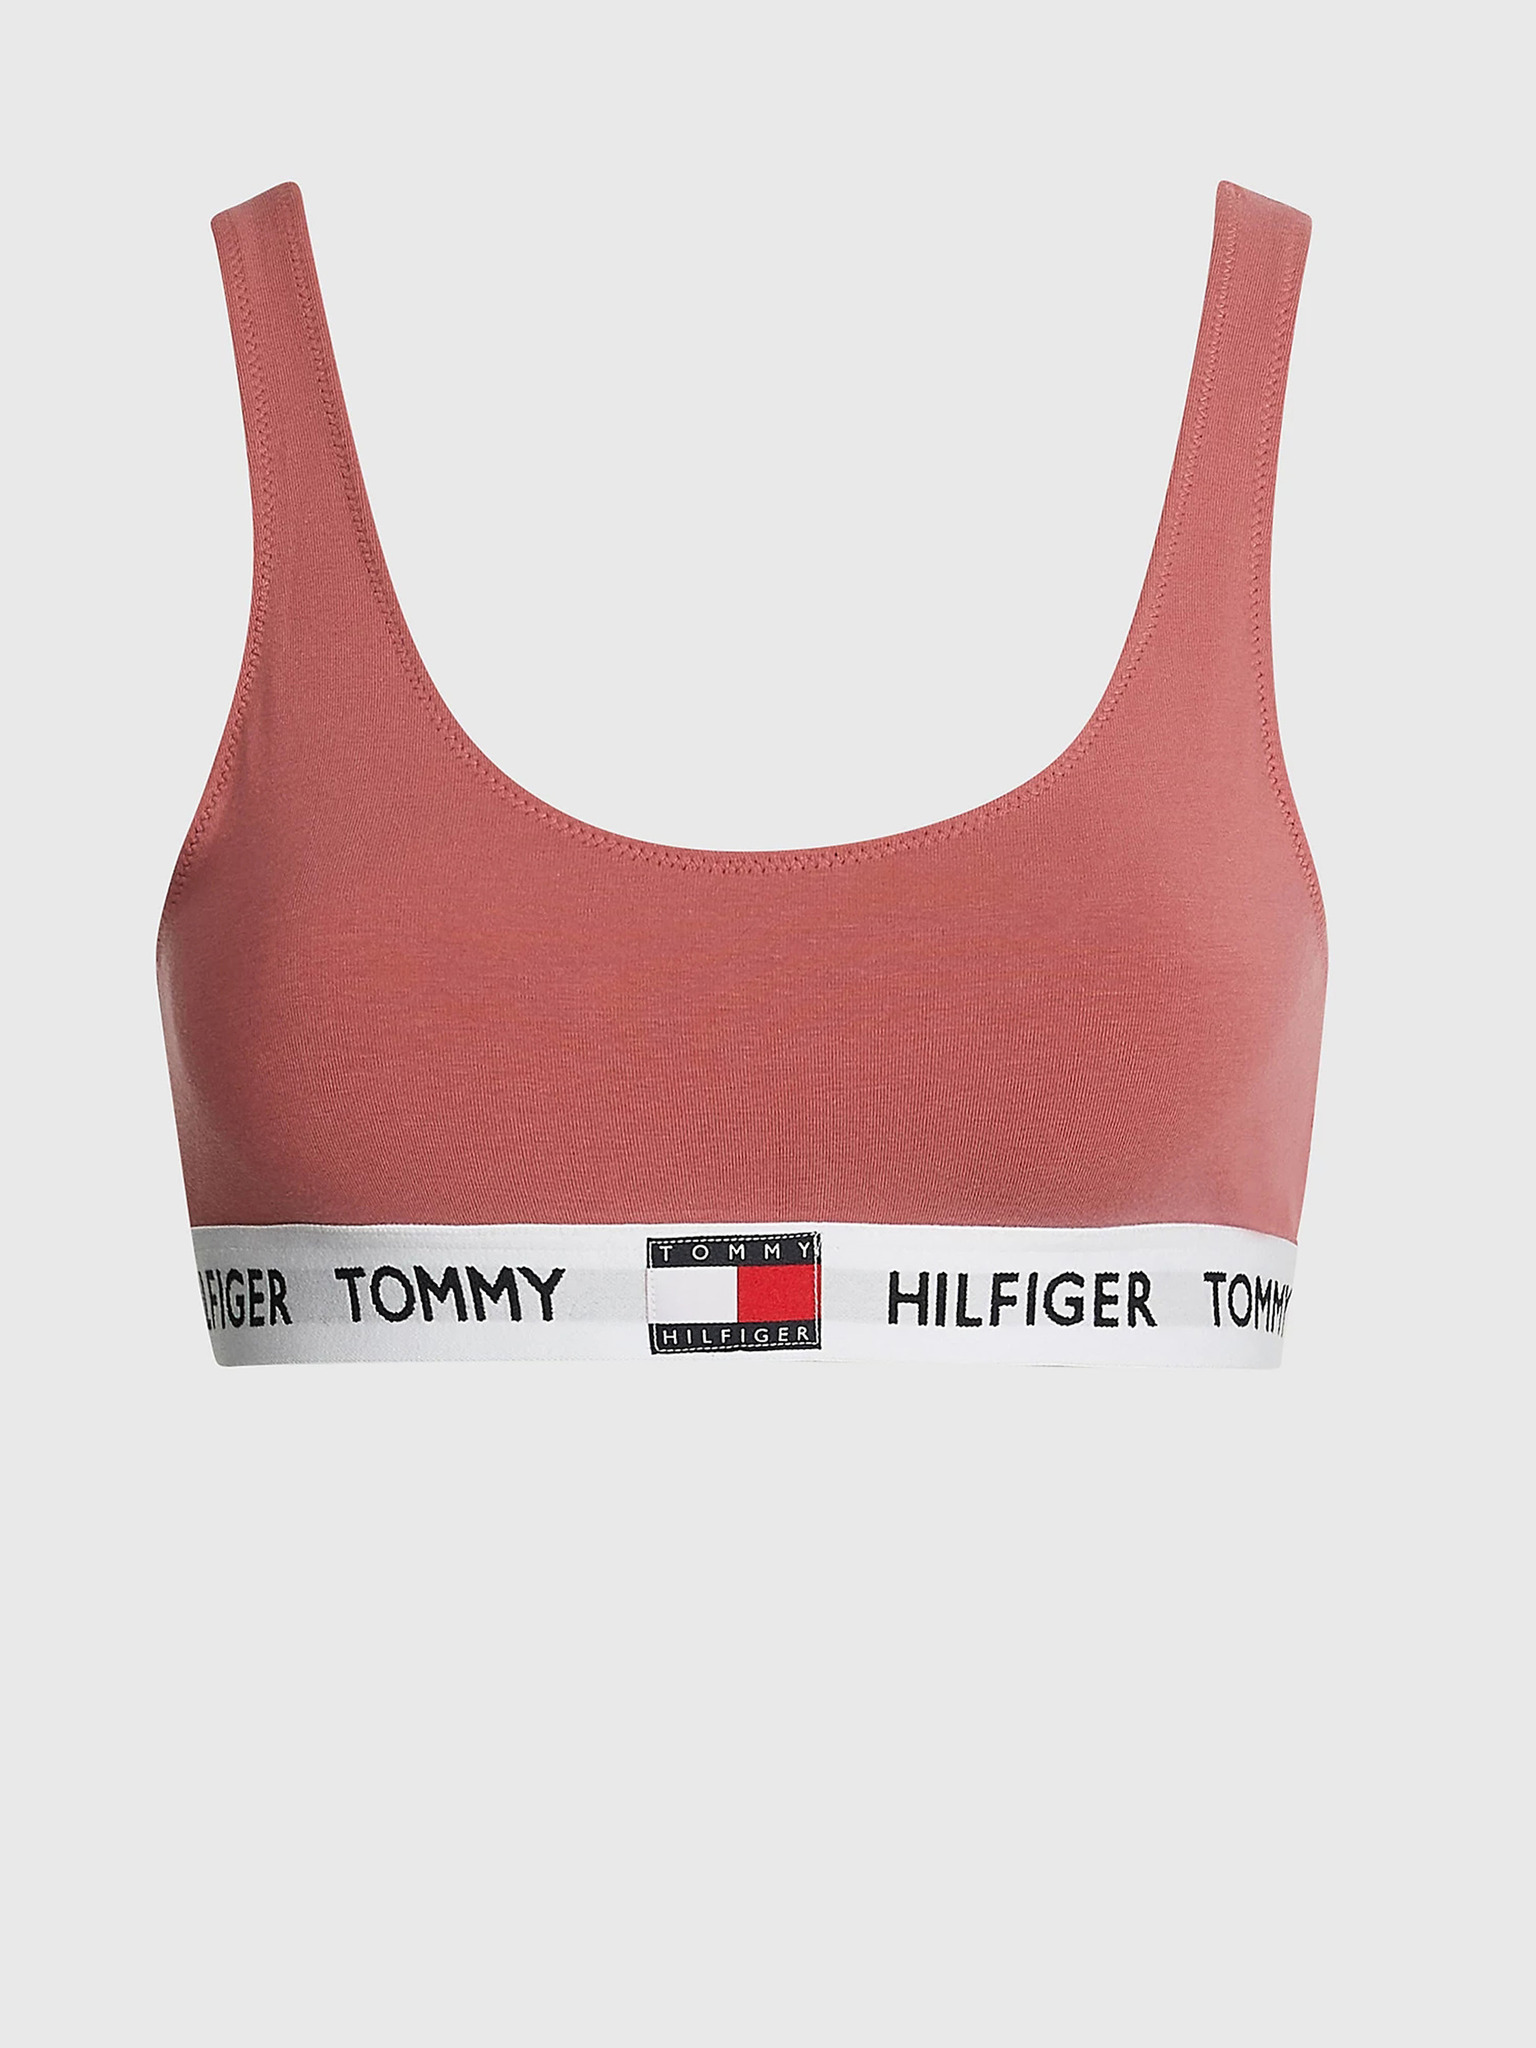 Tommy Hilfiger Bra - Underwear